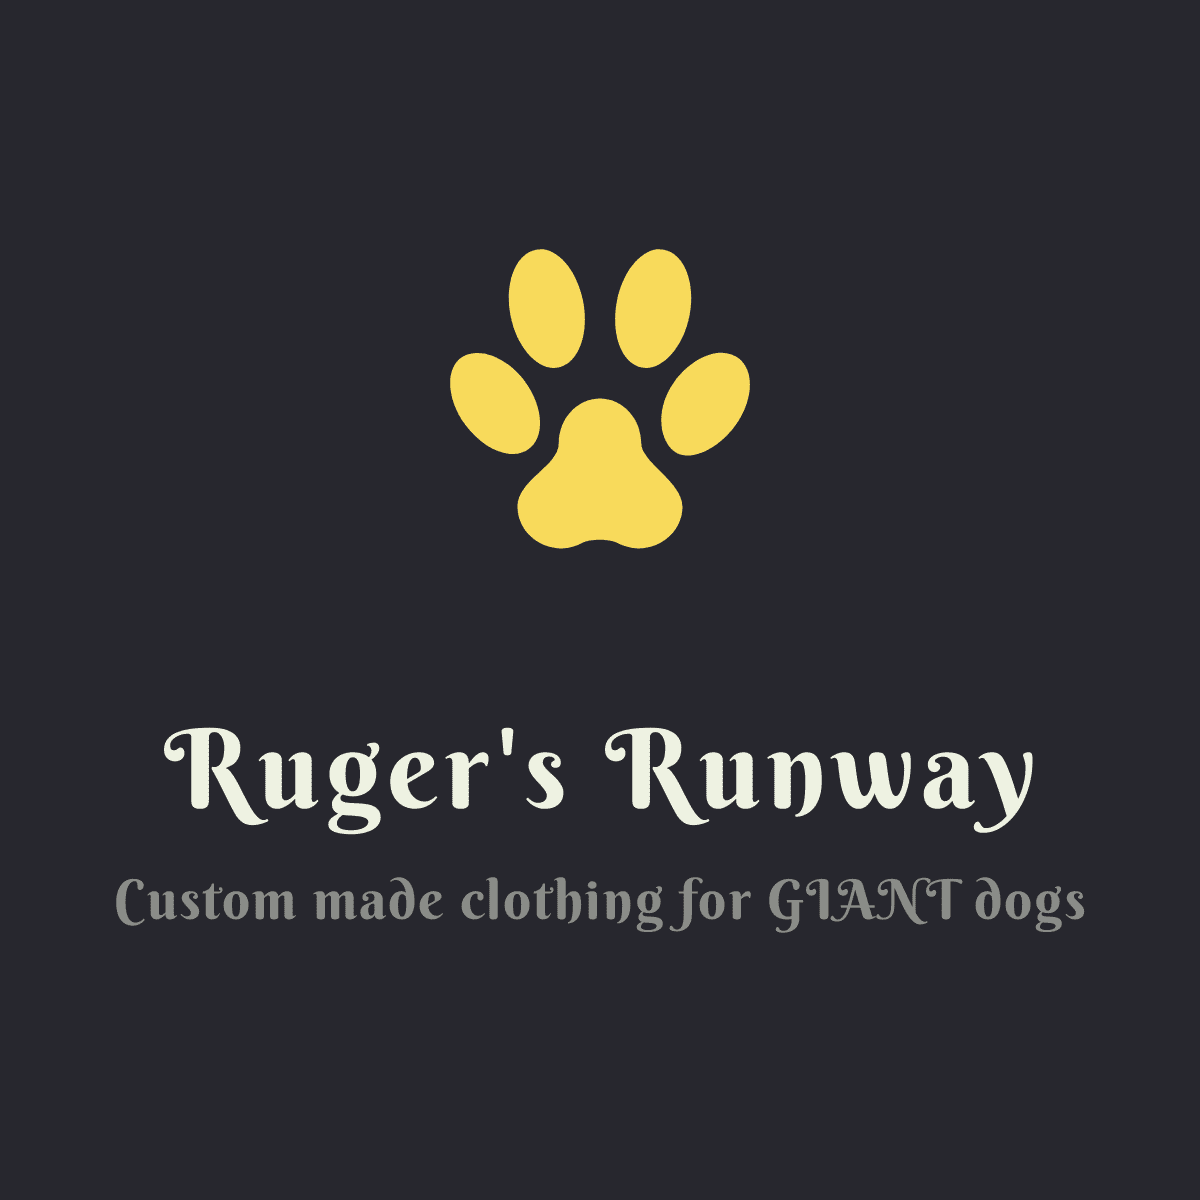 Ruger's Runway